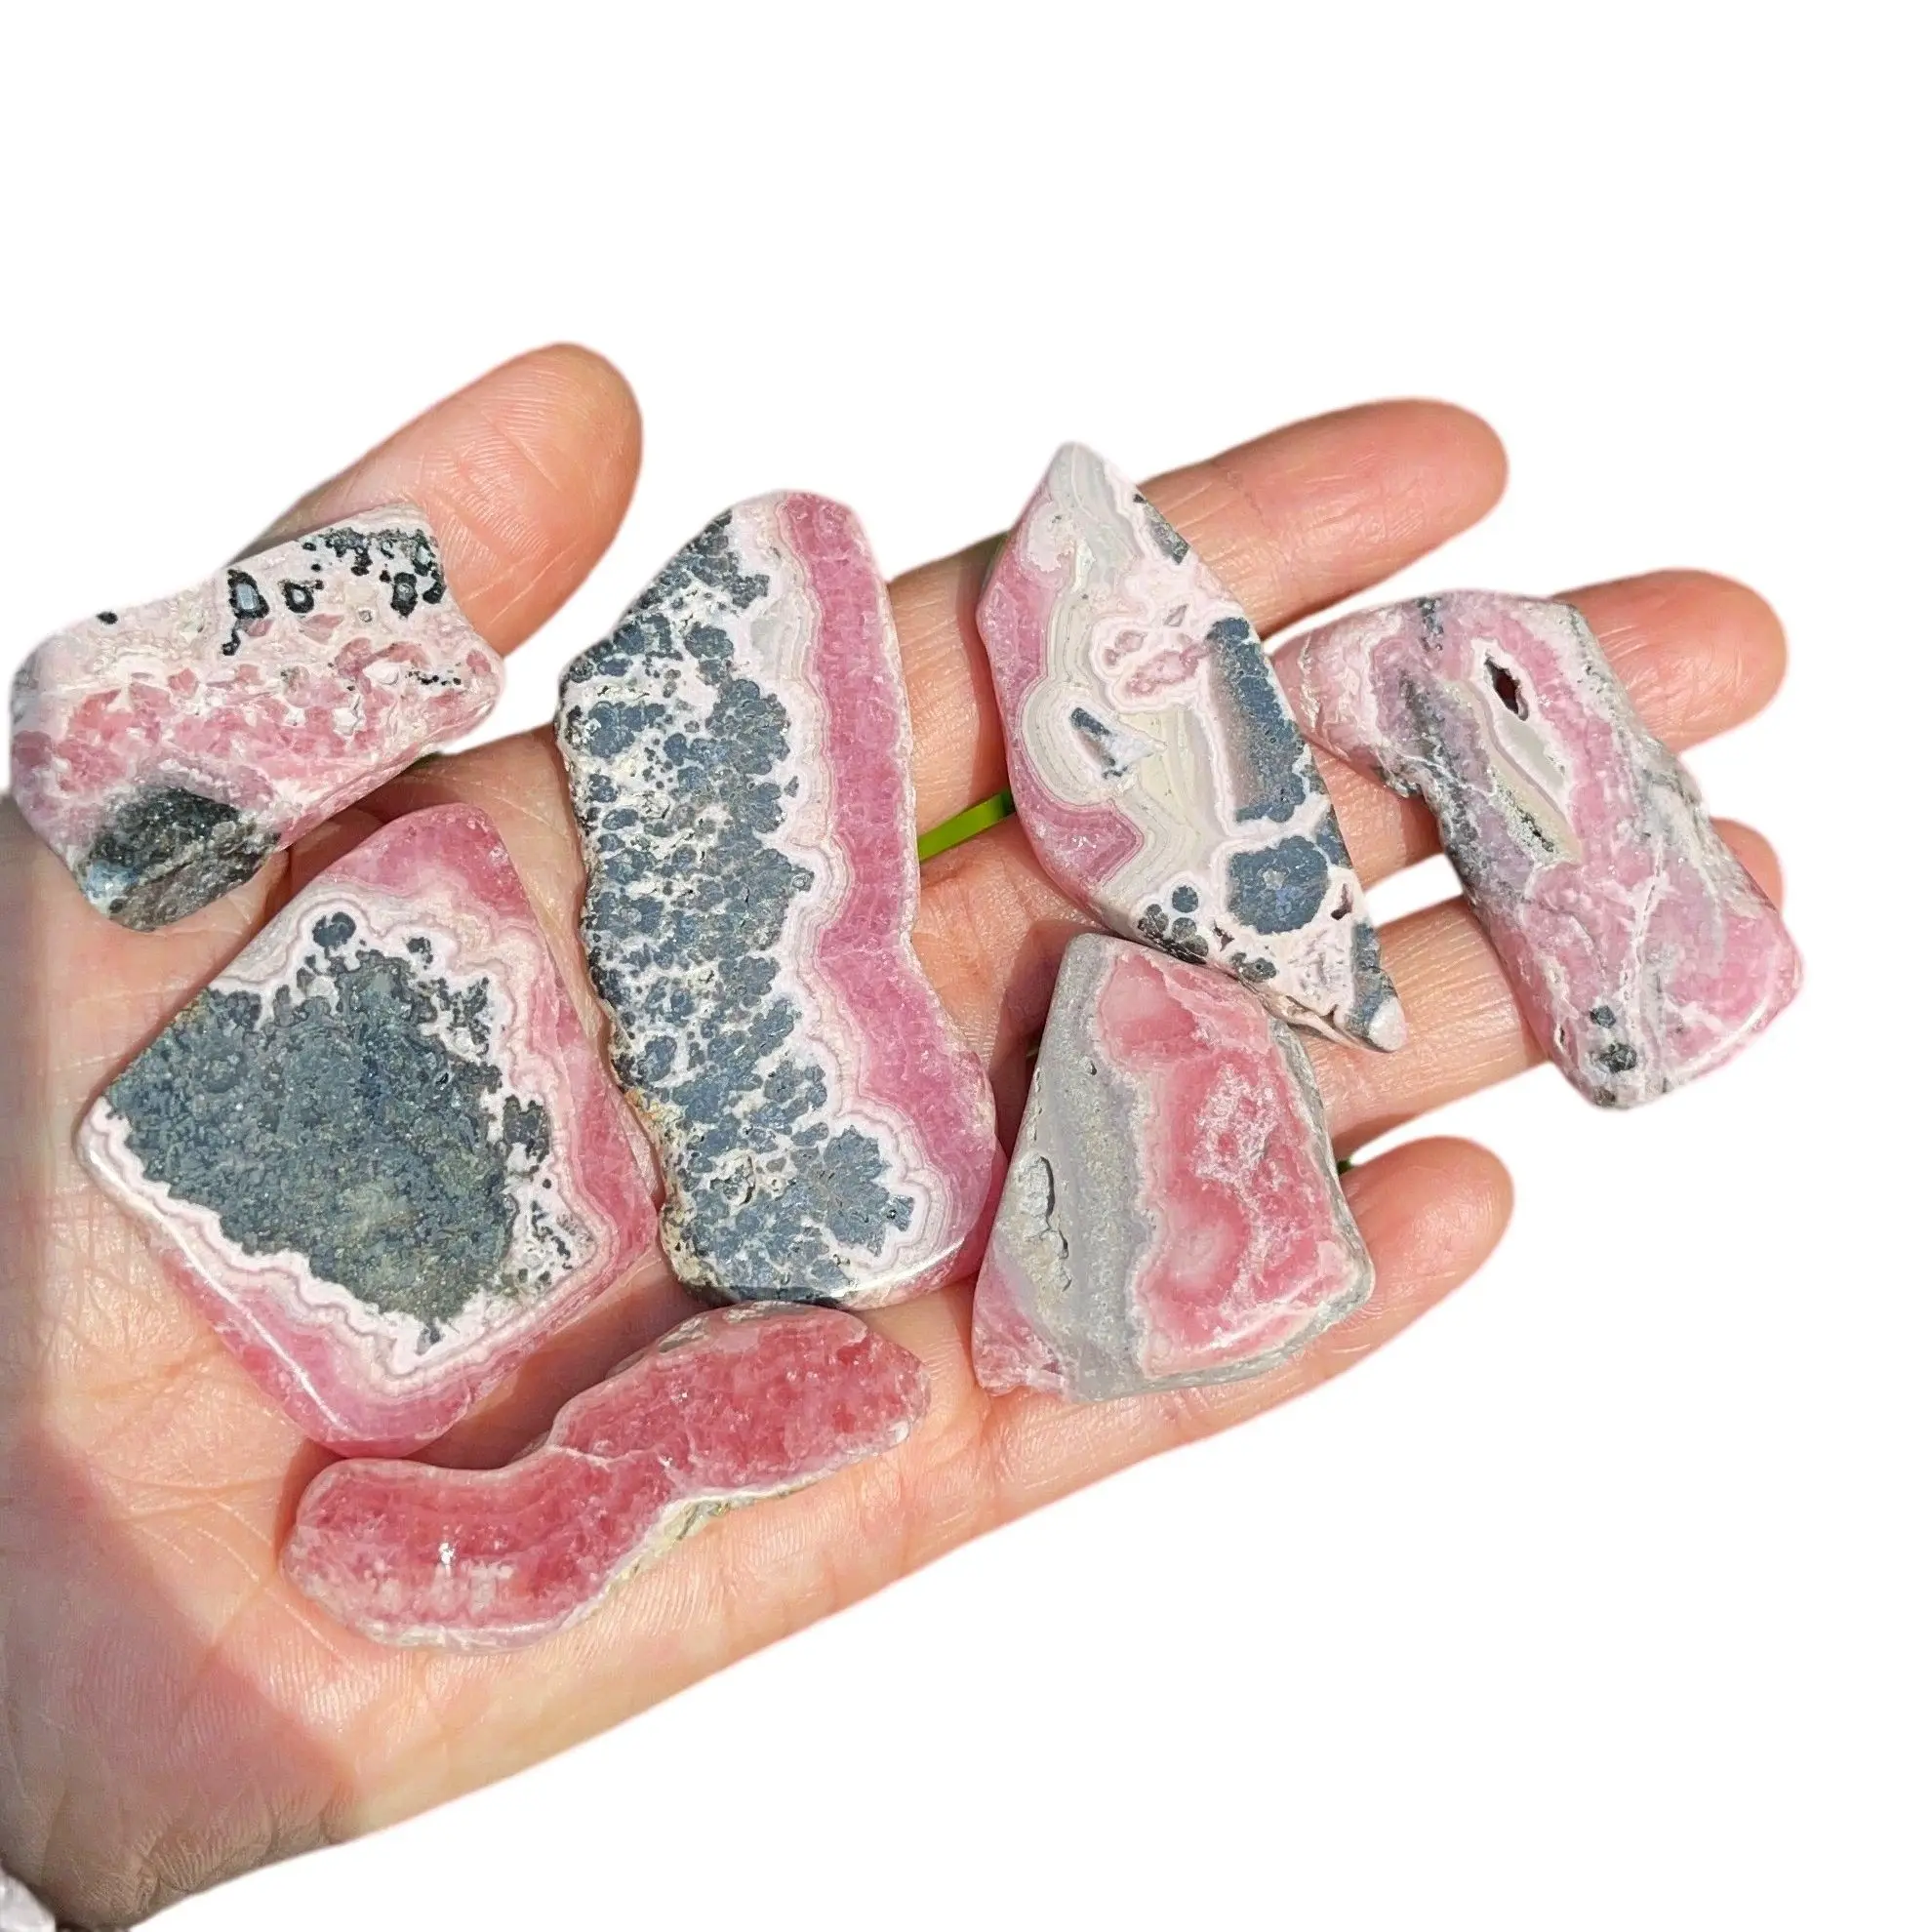 

Rhodochrosite Slab rhodochrosite crystal - rhodochrosite stone slab - pink rhodochrosite stone geode slice - healing crystals